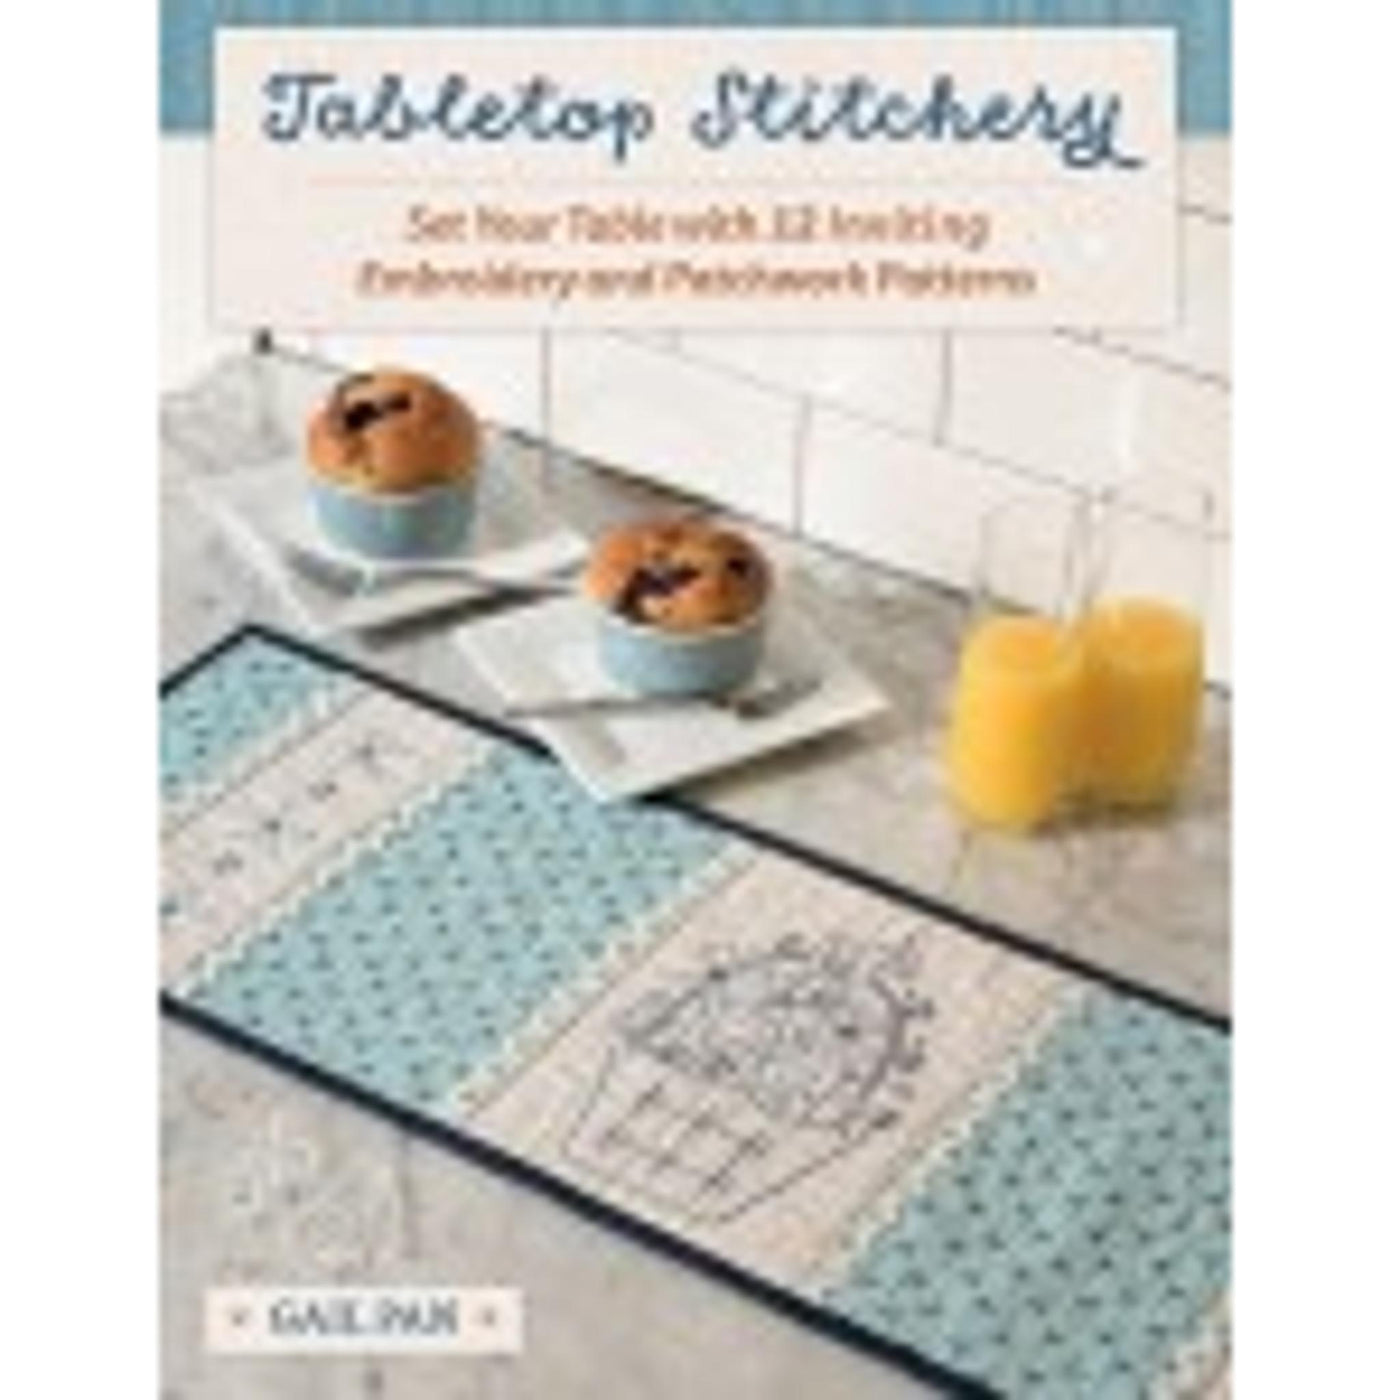 Tabletopp Stitchery - Gail Pan